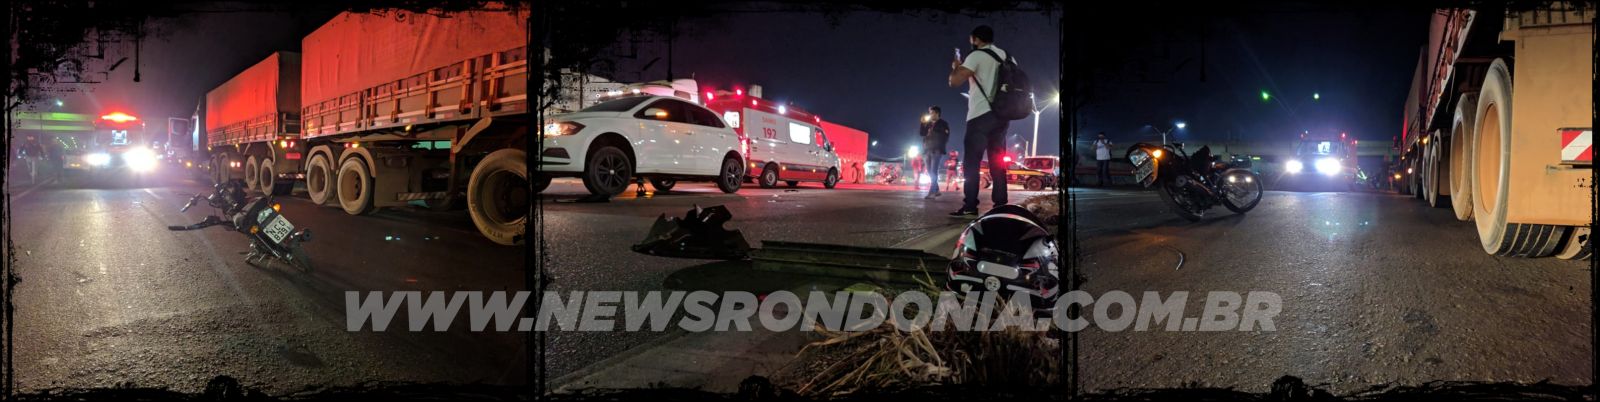 URGENTE: Motociclista é arrastado por carro na BR-364 - News Rondônia